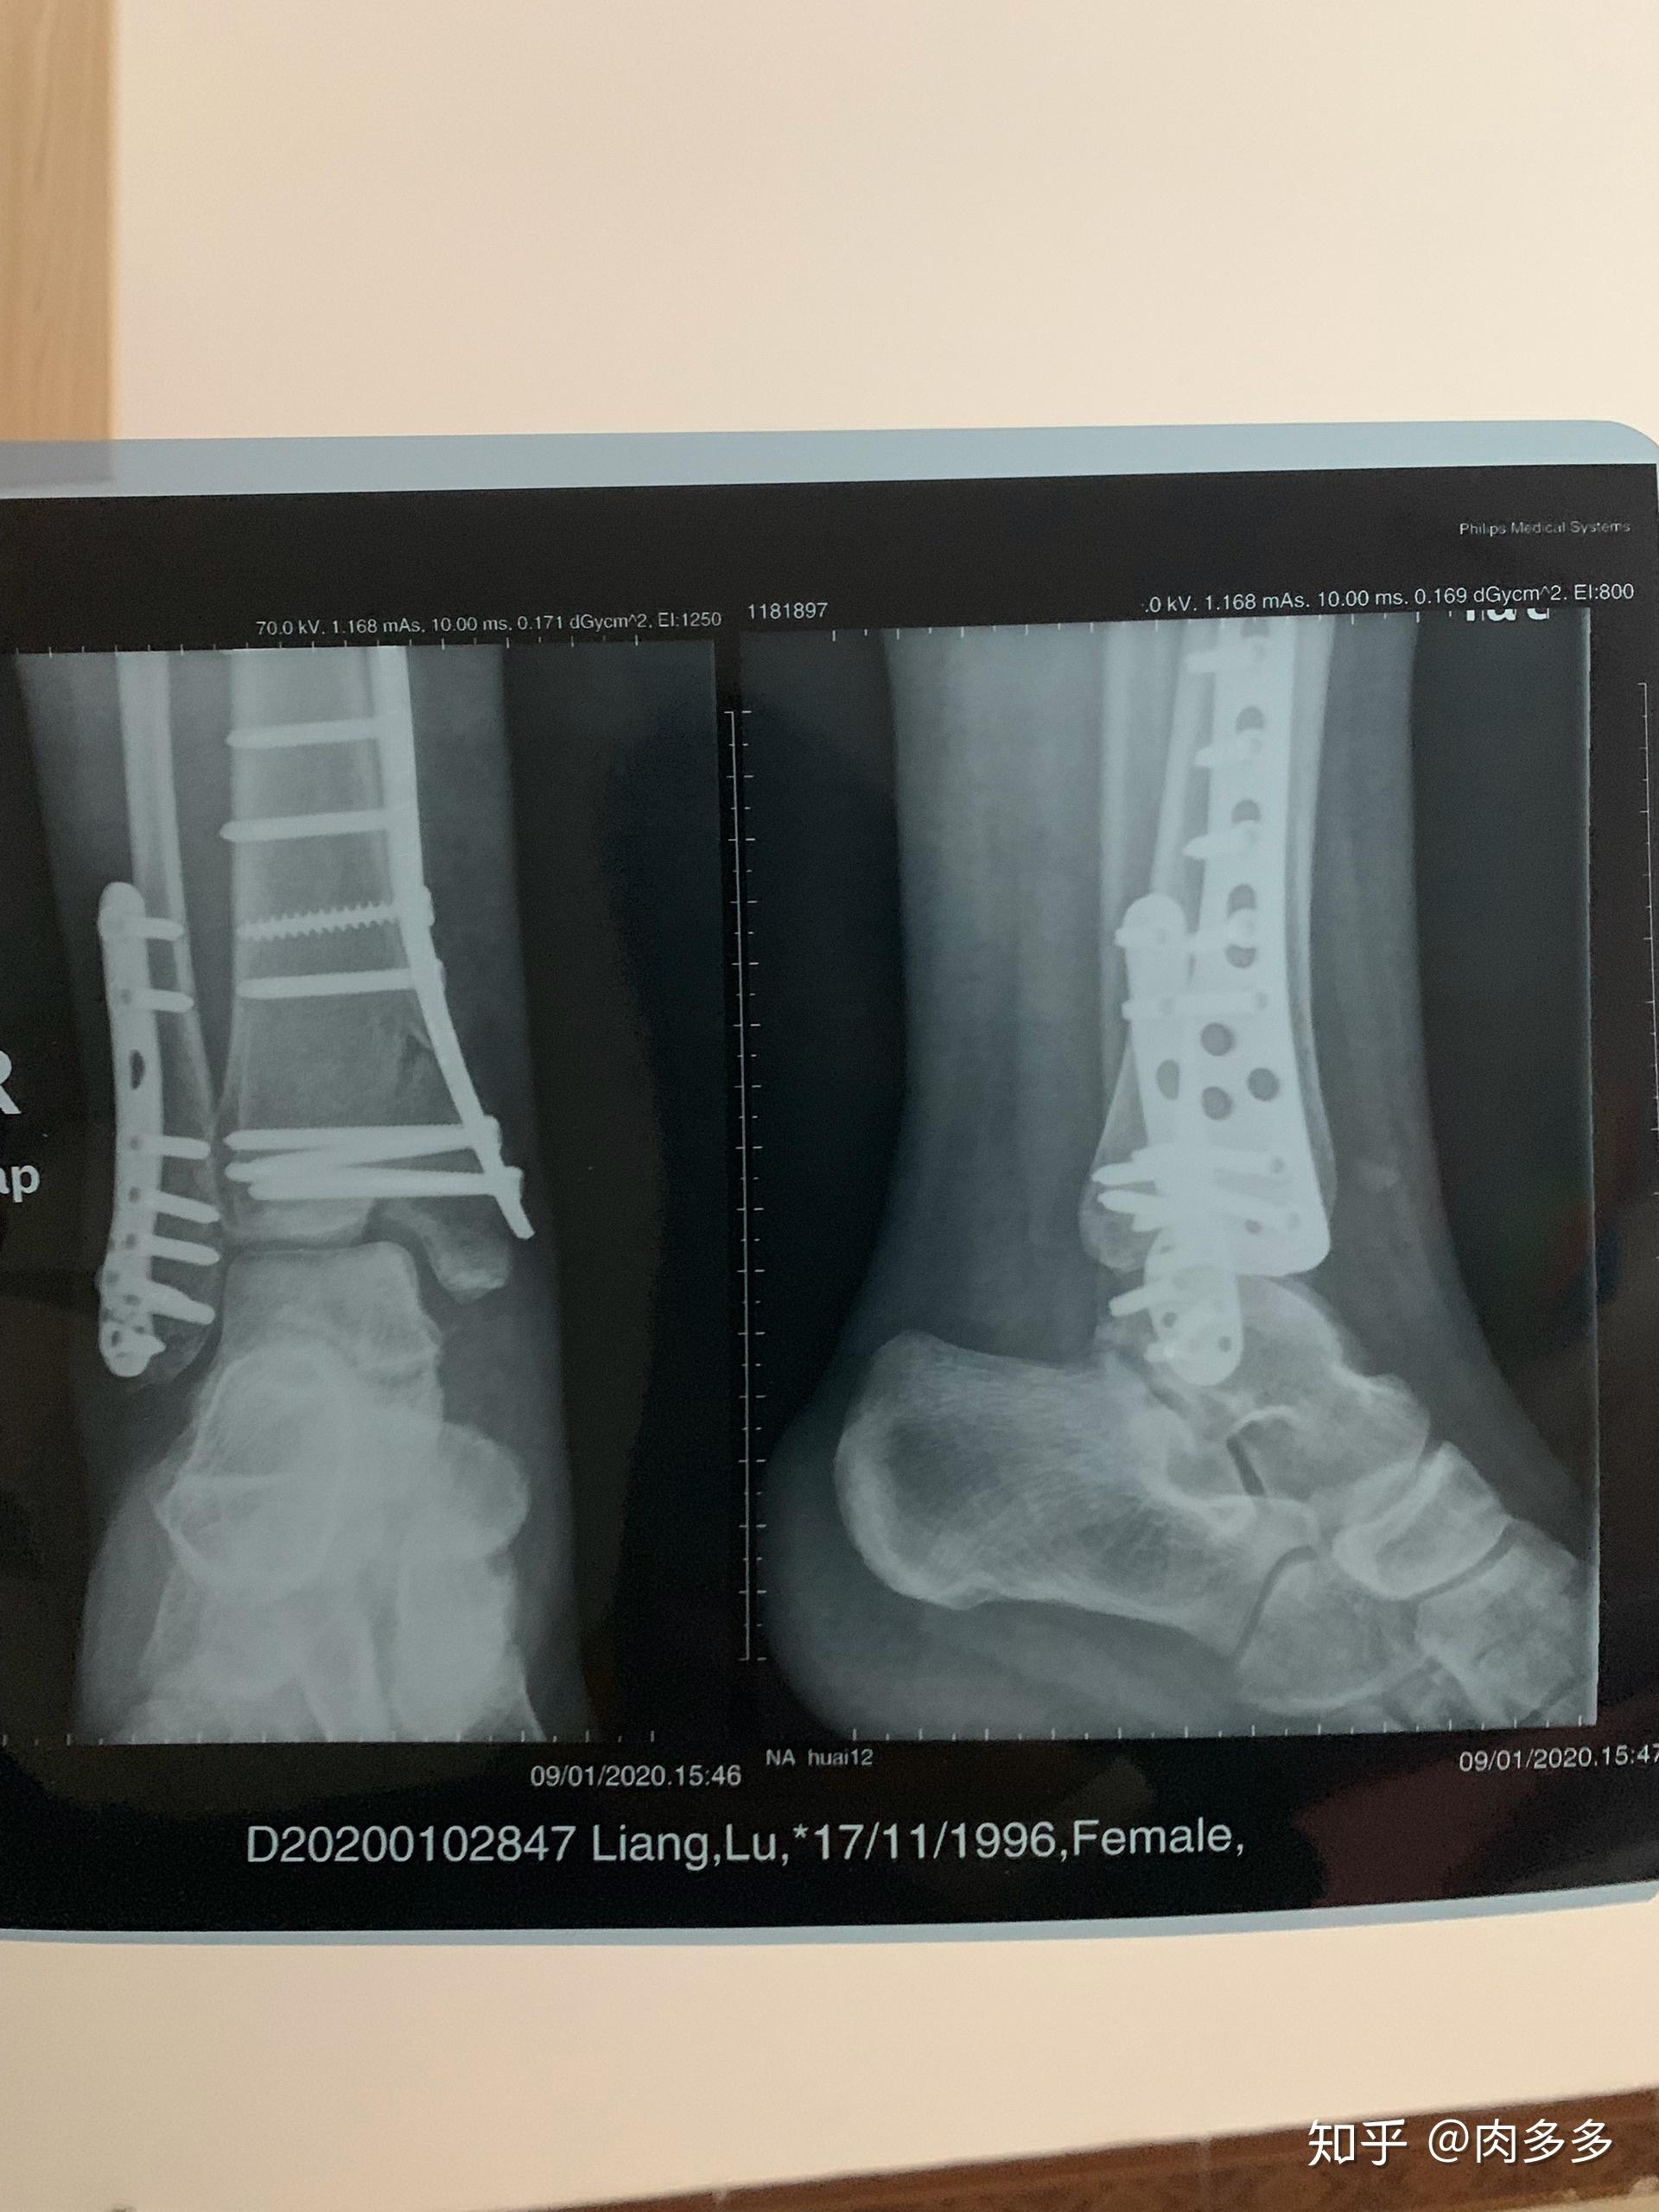 踝关节骨折病例 - 骨科专业讨论版 -丁香园论坛